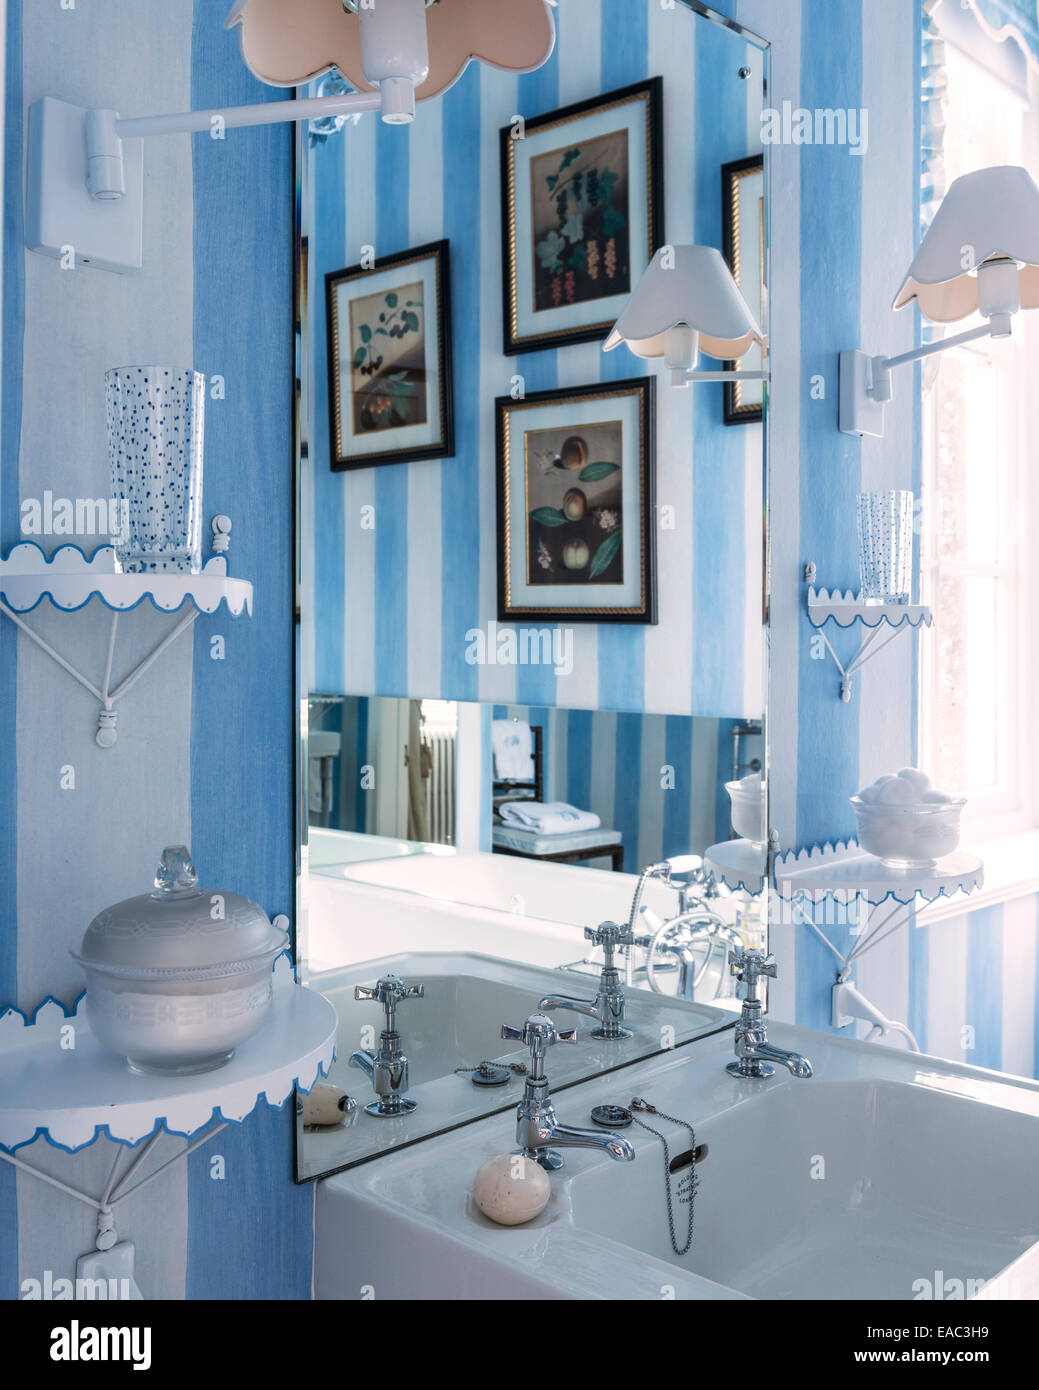 Détails salle de bains bleu et blanc avec des illustrations reflétée Banque D'Images